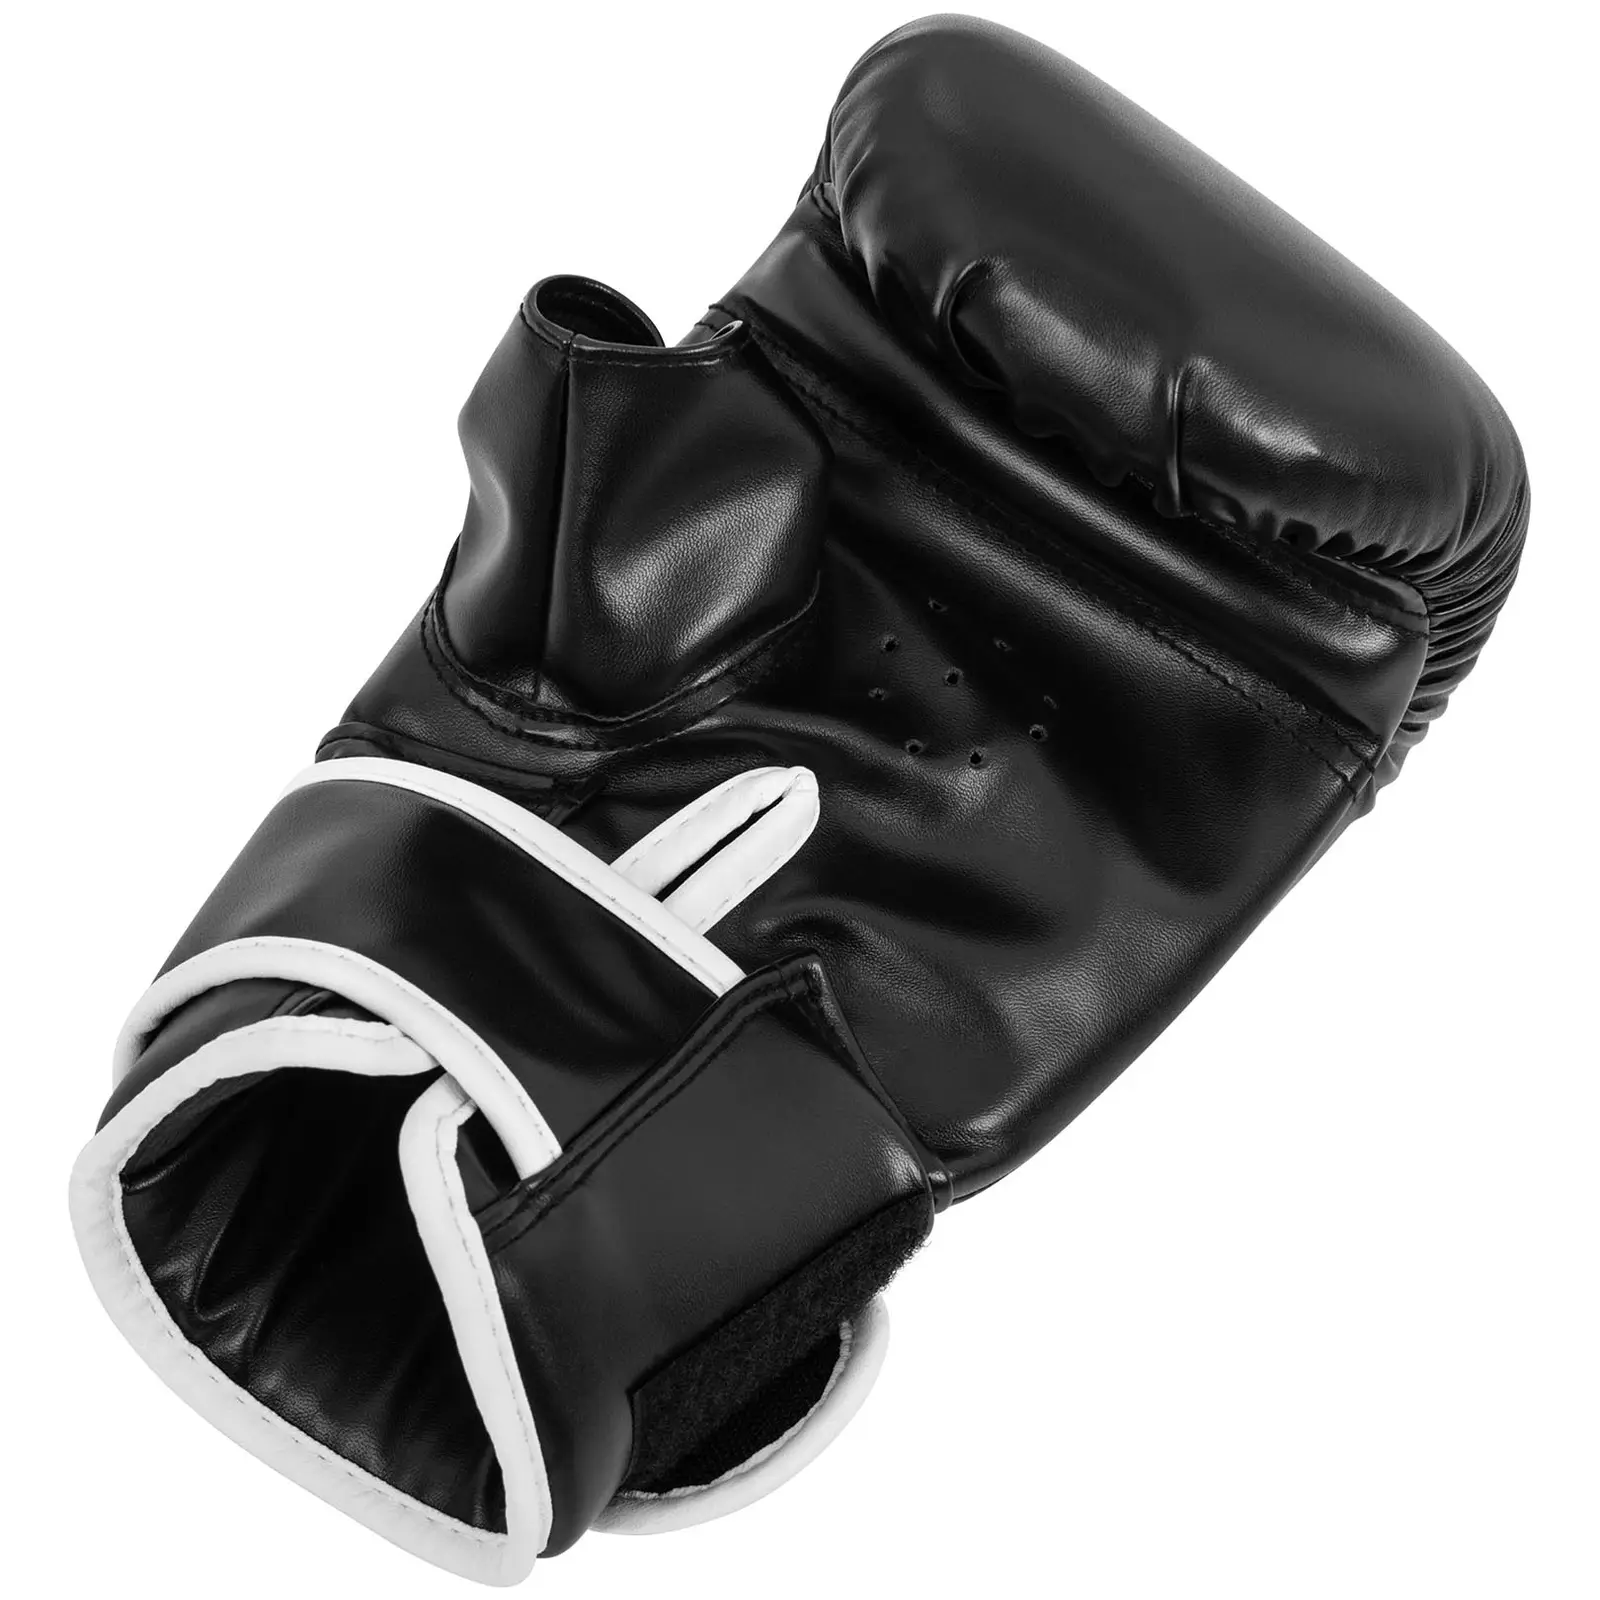 Luvas de boxe para treino em saco - 10 oz - preto